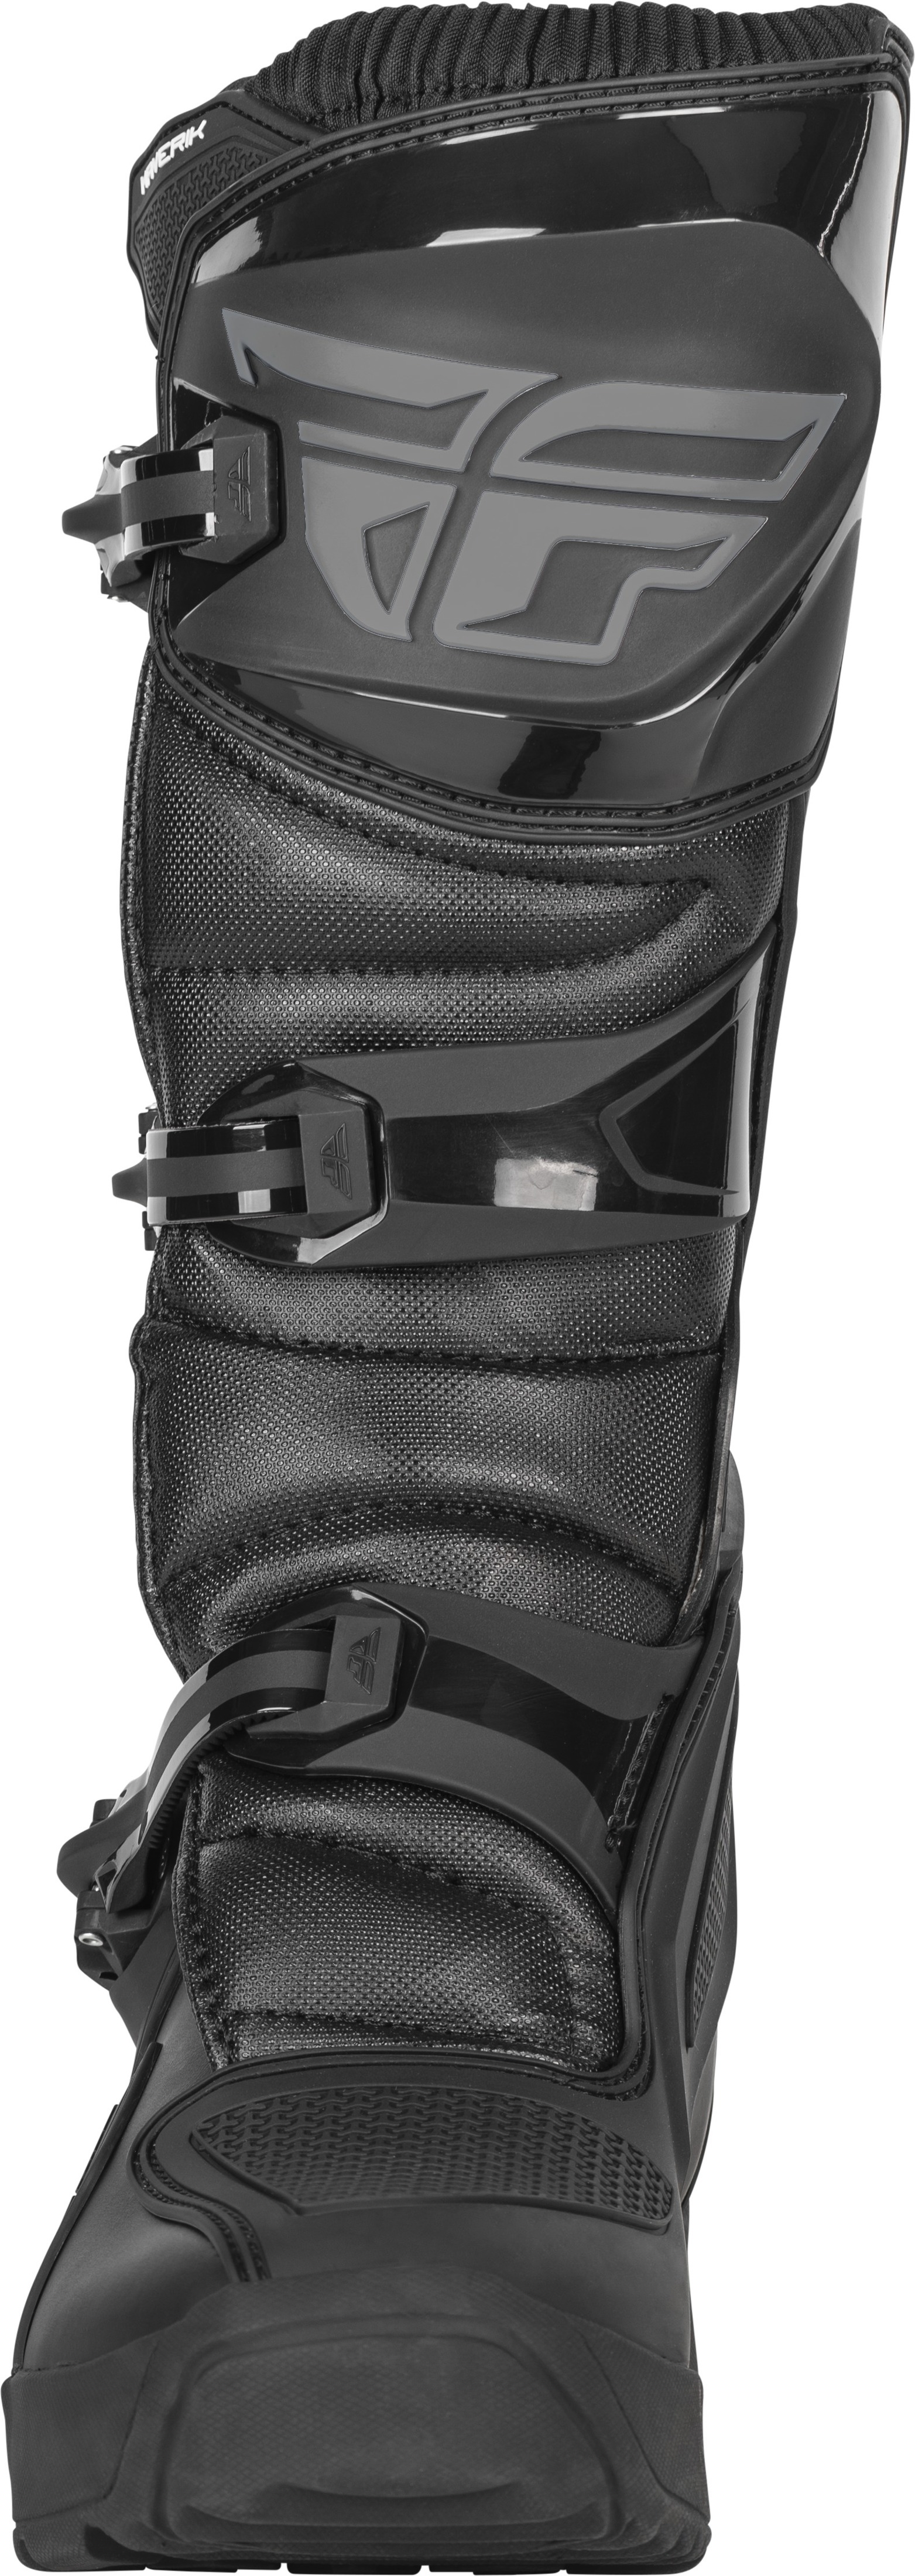 Maverik Enduro Boot Black Size 13 - Click Image to Close